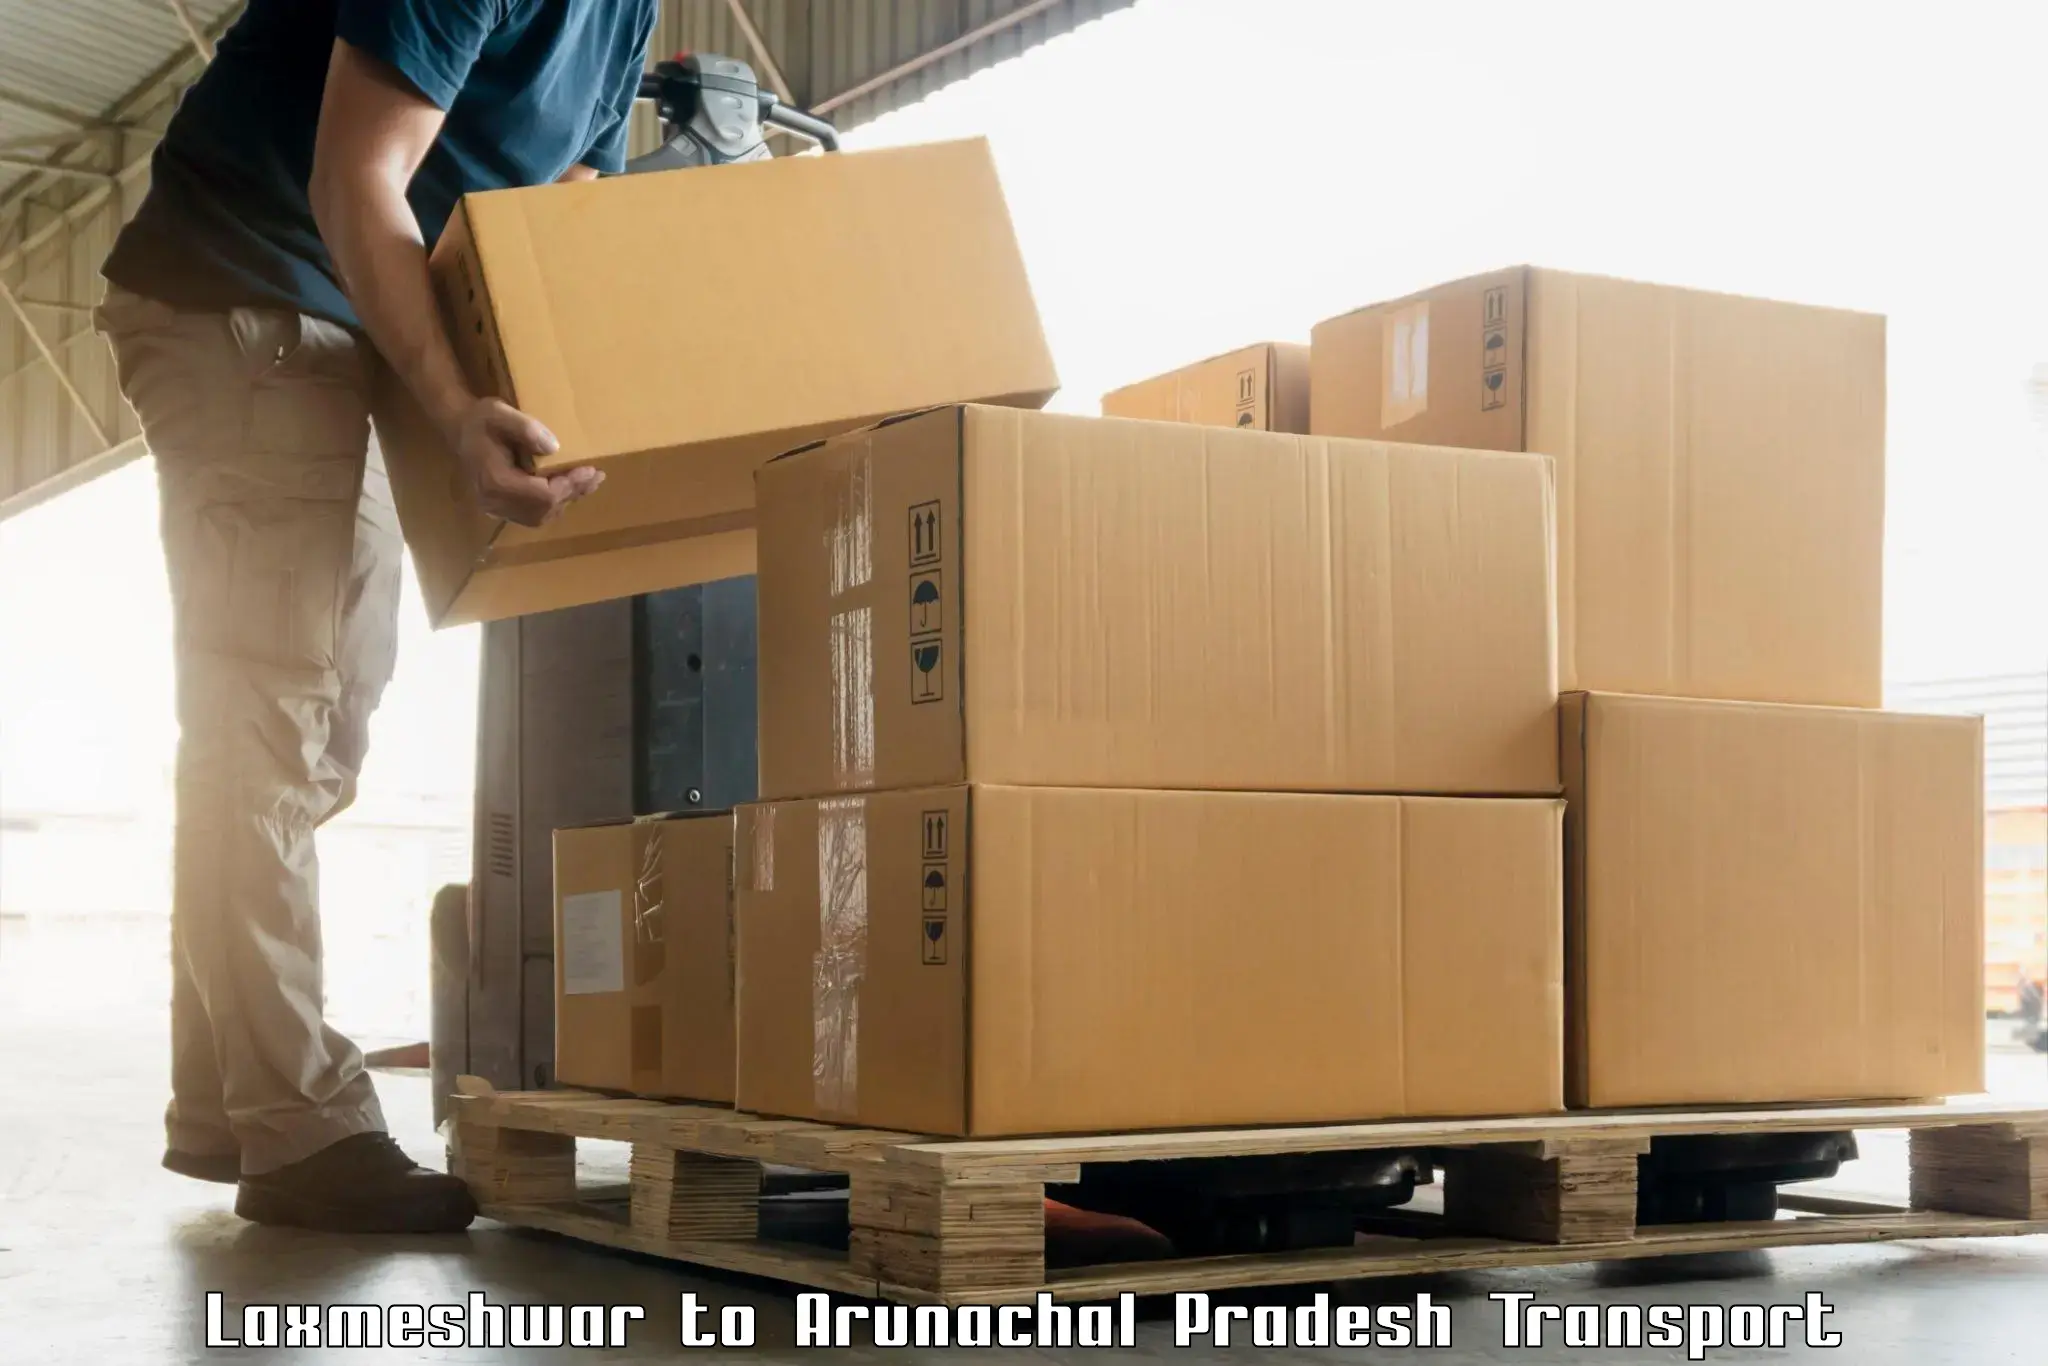 Furniture transport service Laxmeshwar to Arunachal Pradesh